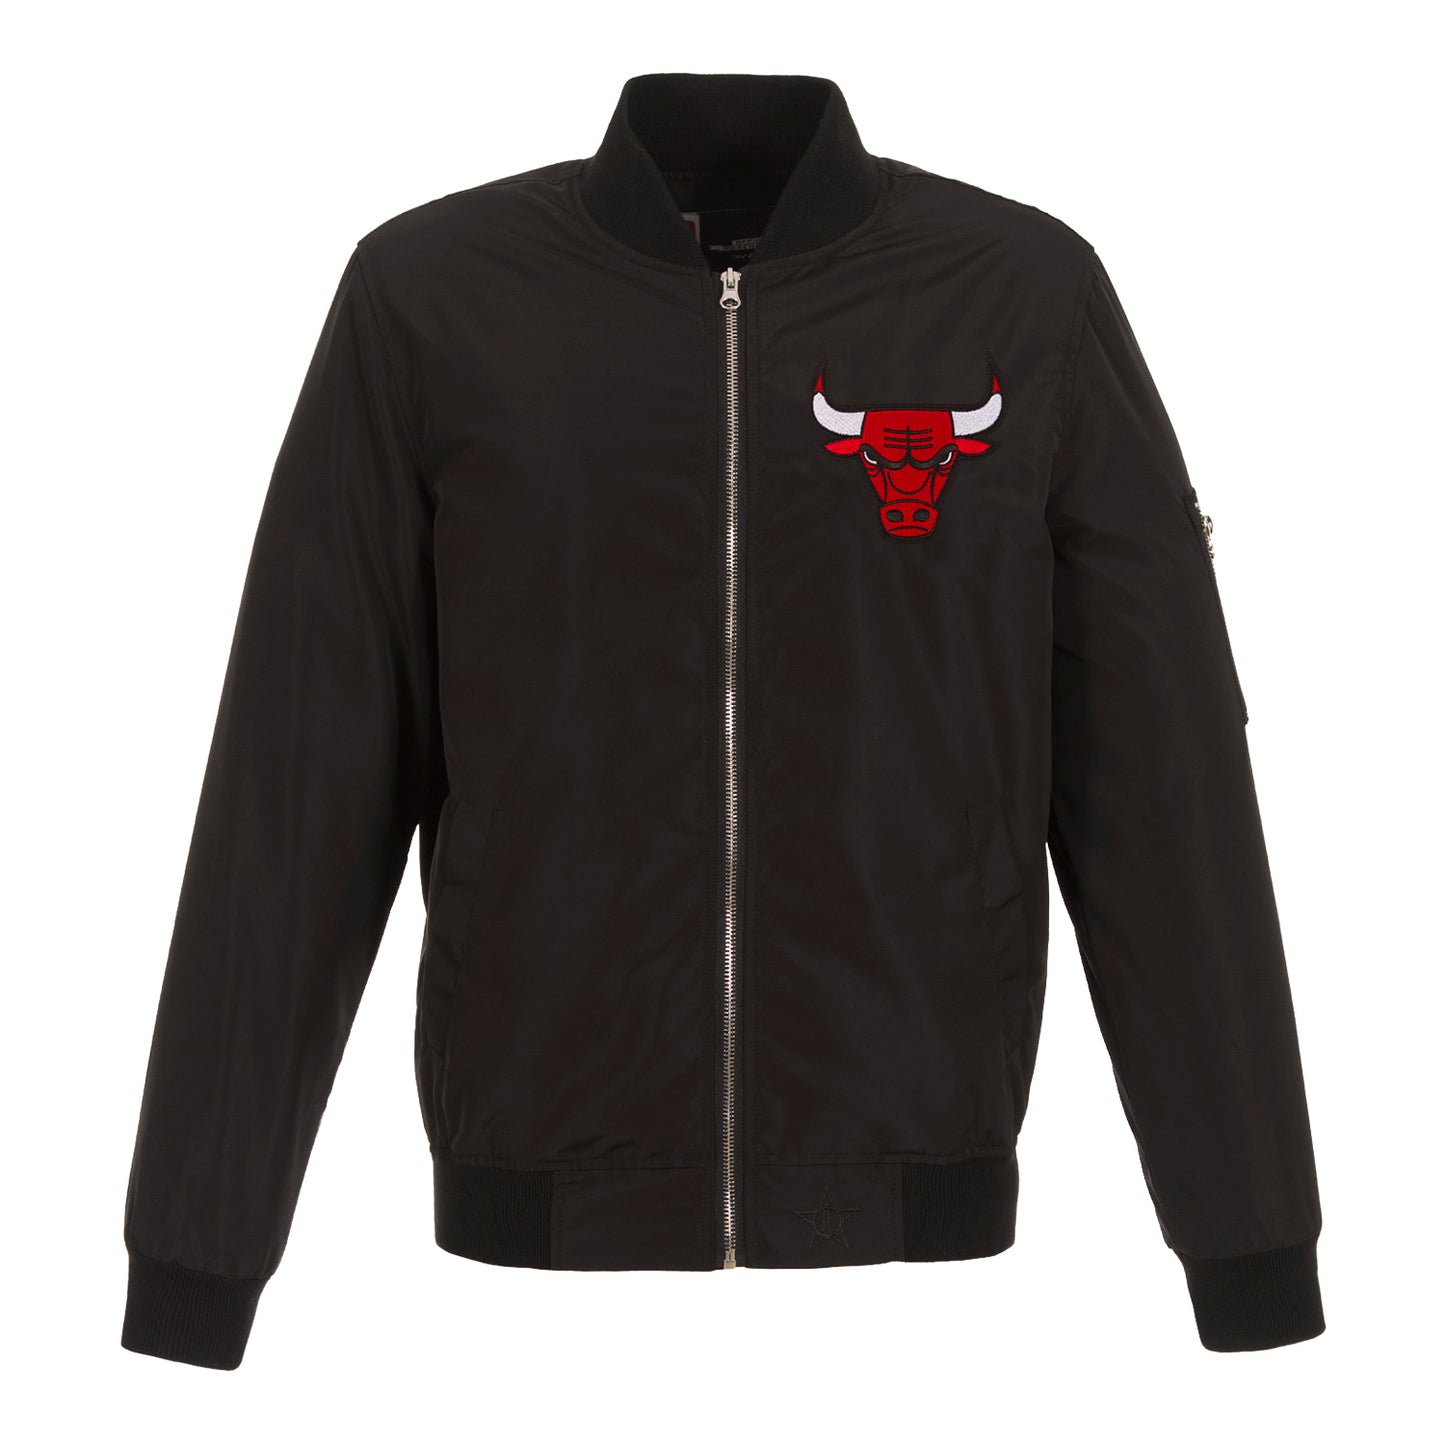 Men's Classics Chicago Bulls White Bomber Jacket